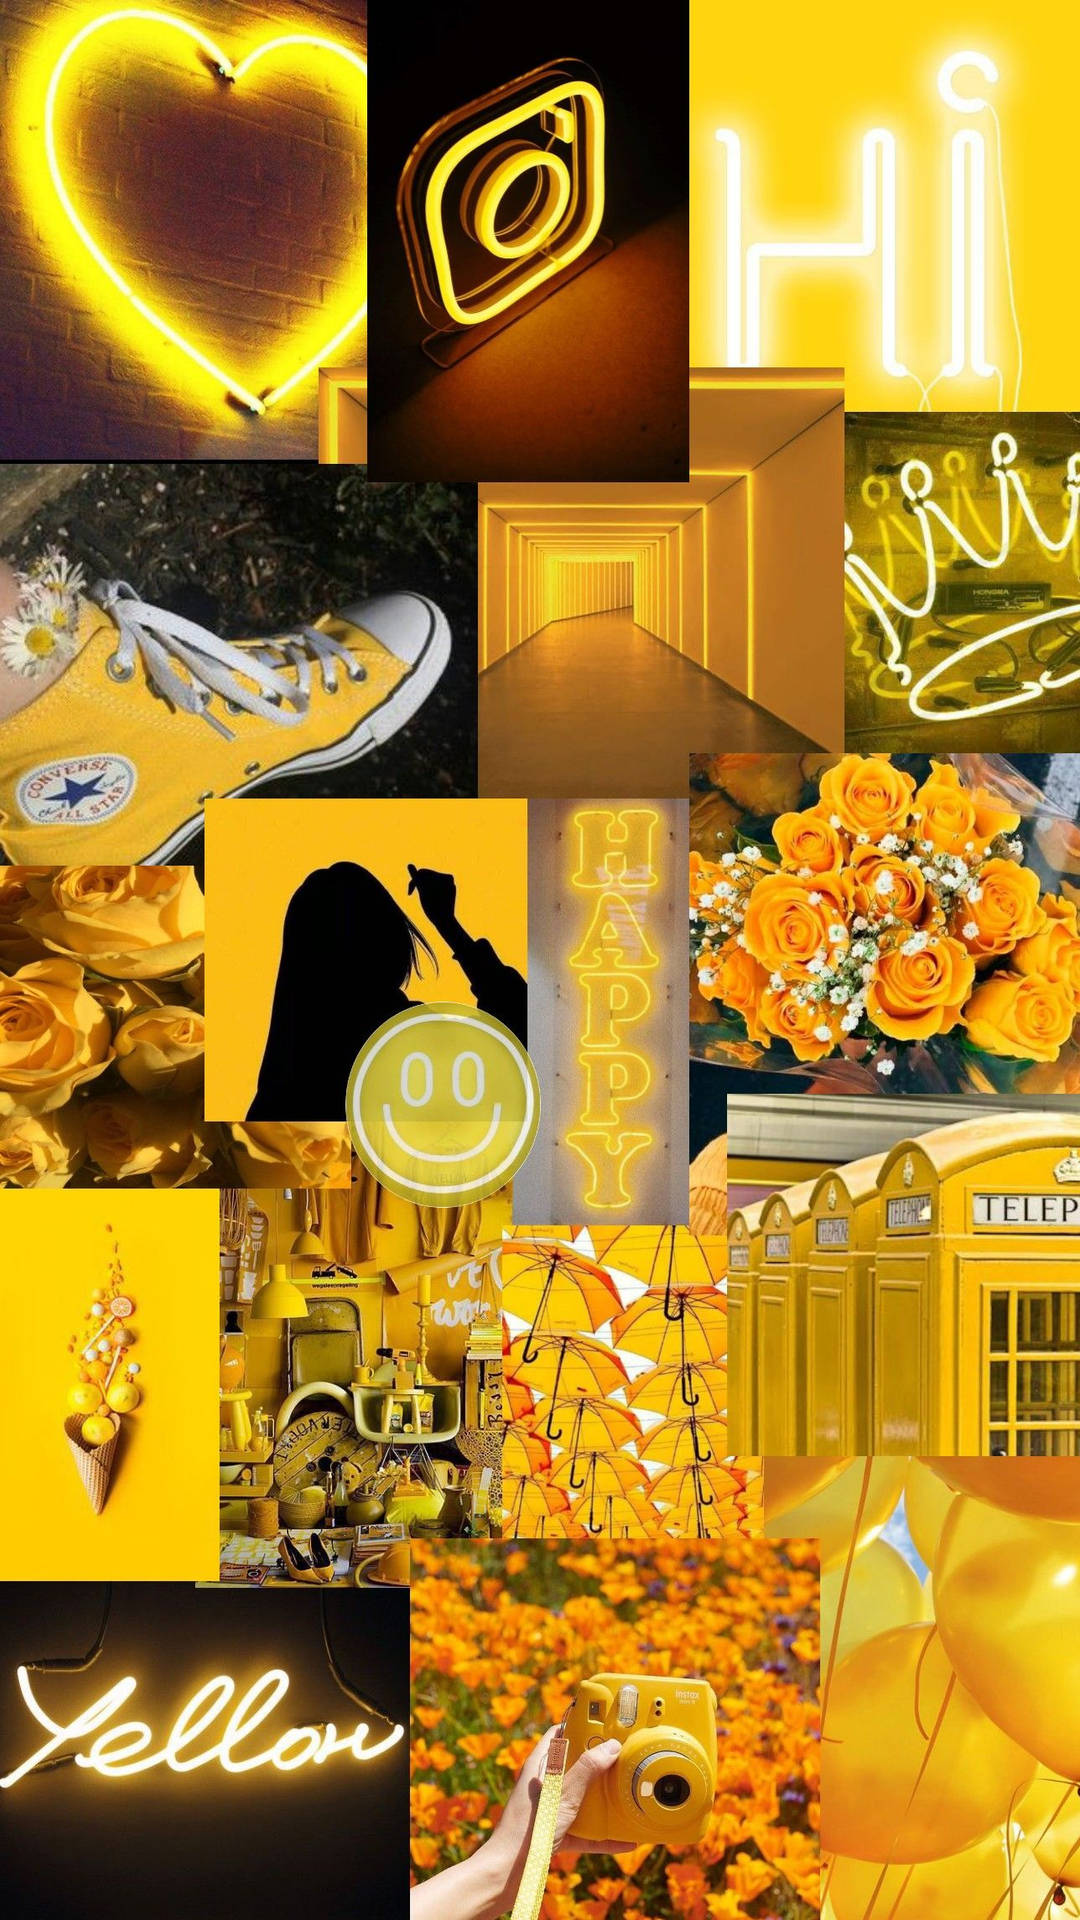 Einecollage Aus Gelben Bildern Mit Einem Gelben Herz Wallpaper